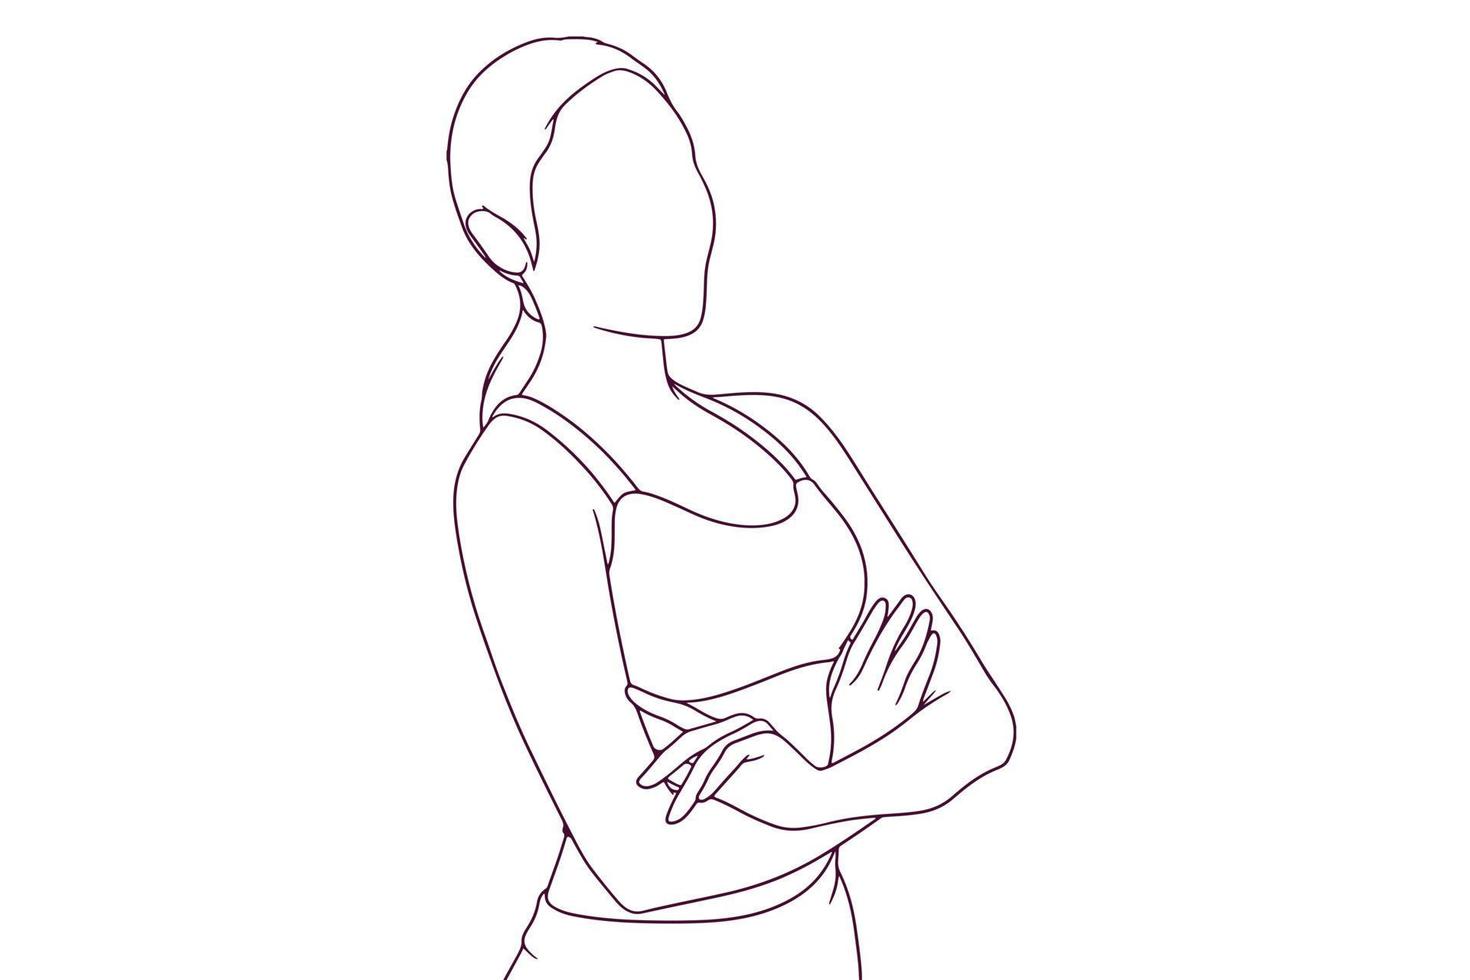 mulher de terno fitness com braços cruzados ilustração vetorial de estilo desenhado à mão vetor